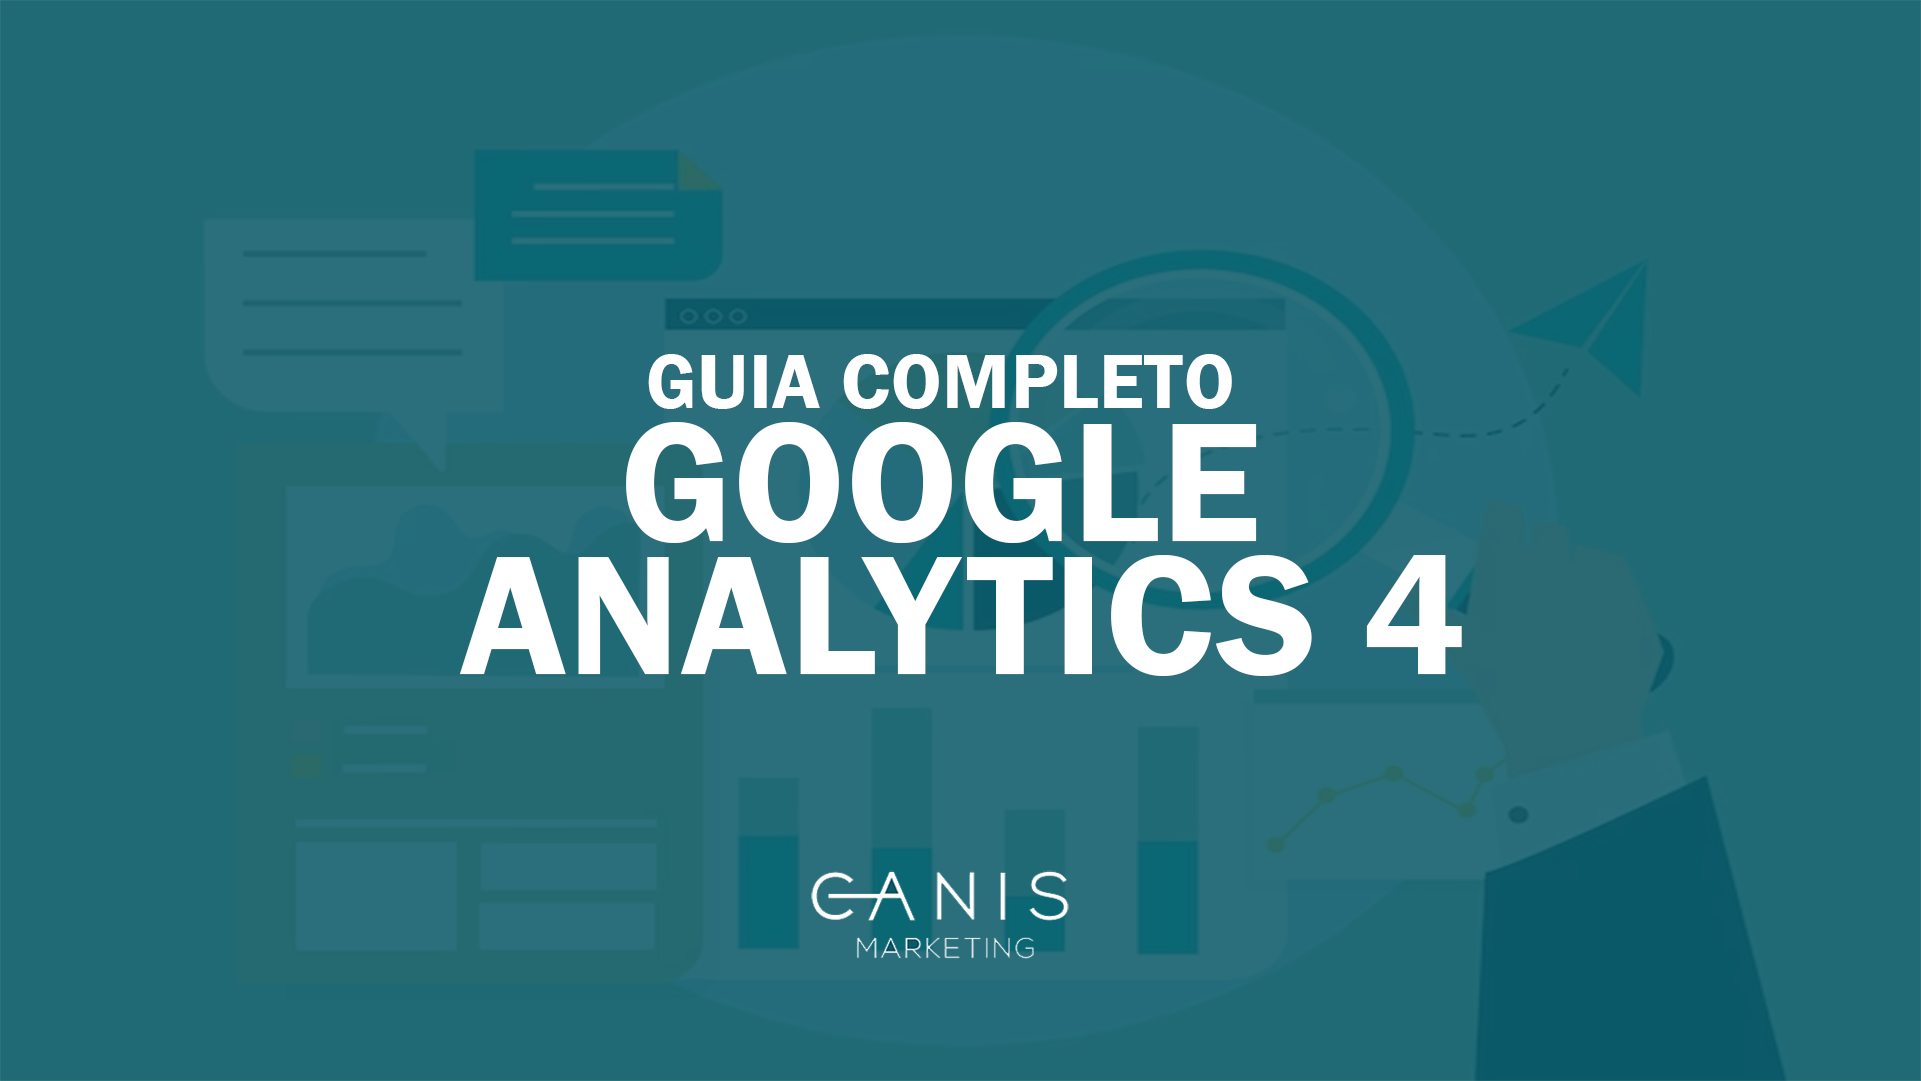 ANALYTICS Google Analytics 4 (GA4) | Guia completo 2021 | ANALYTICS